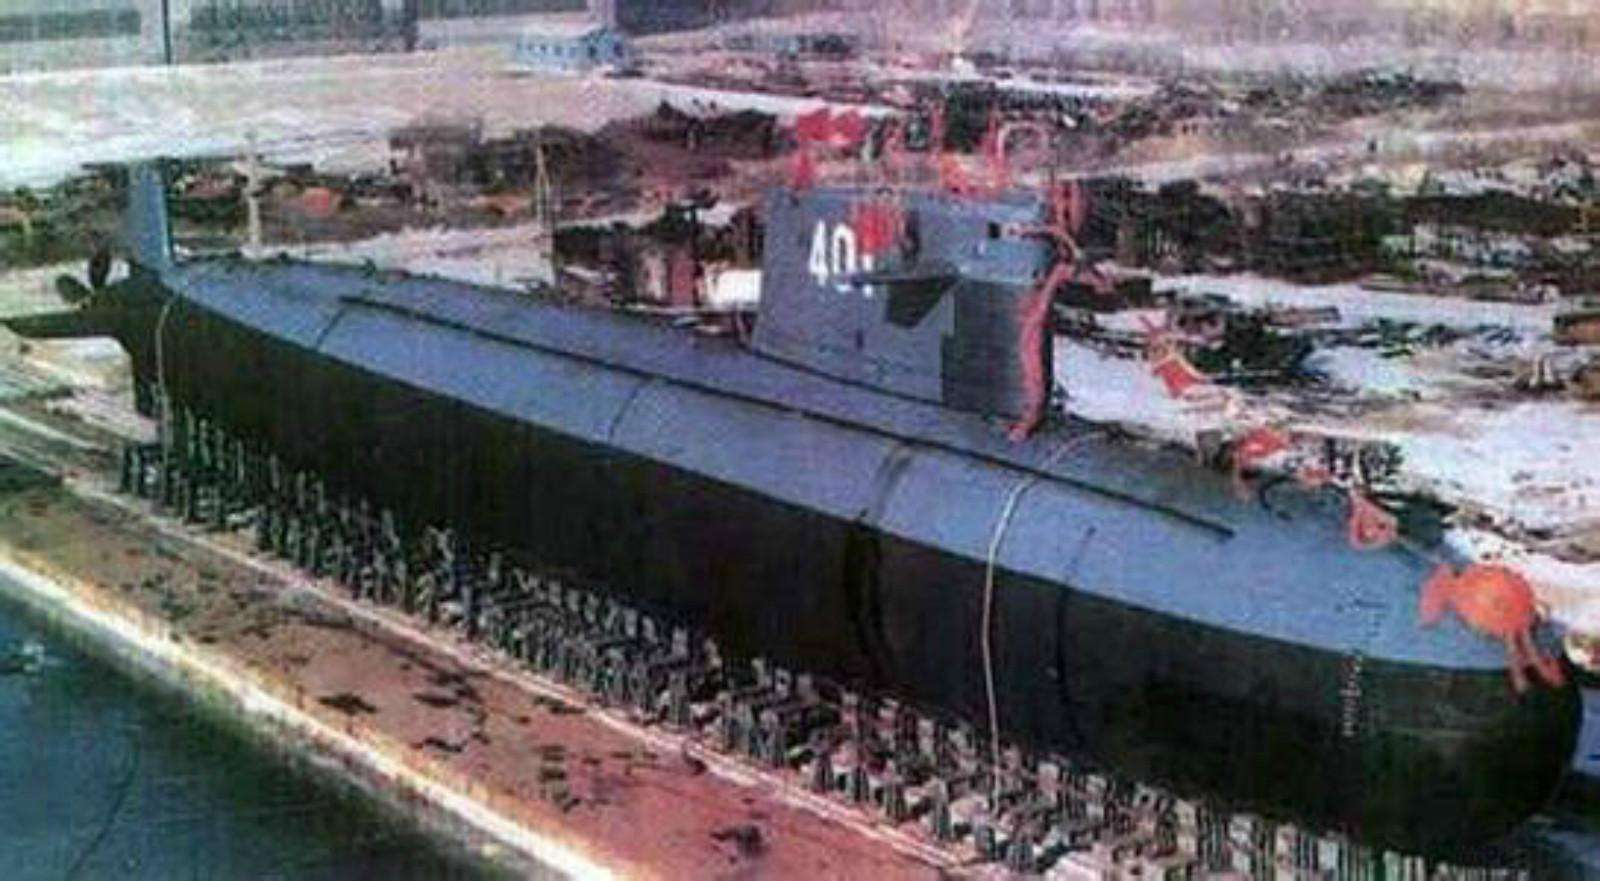 4年后的8月1日,中央军委下发命令,将中国自行研制的第一艘核潜艇命名